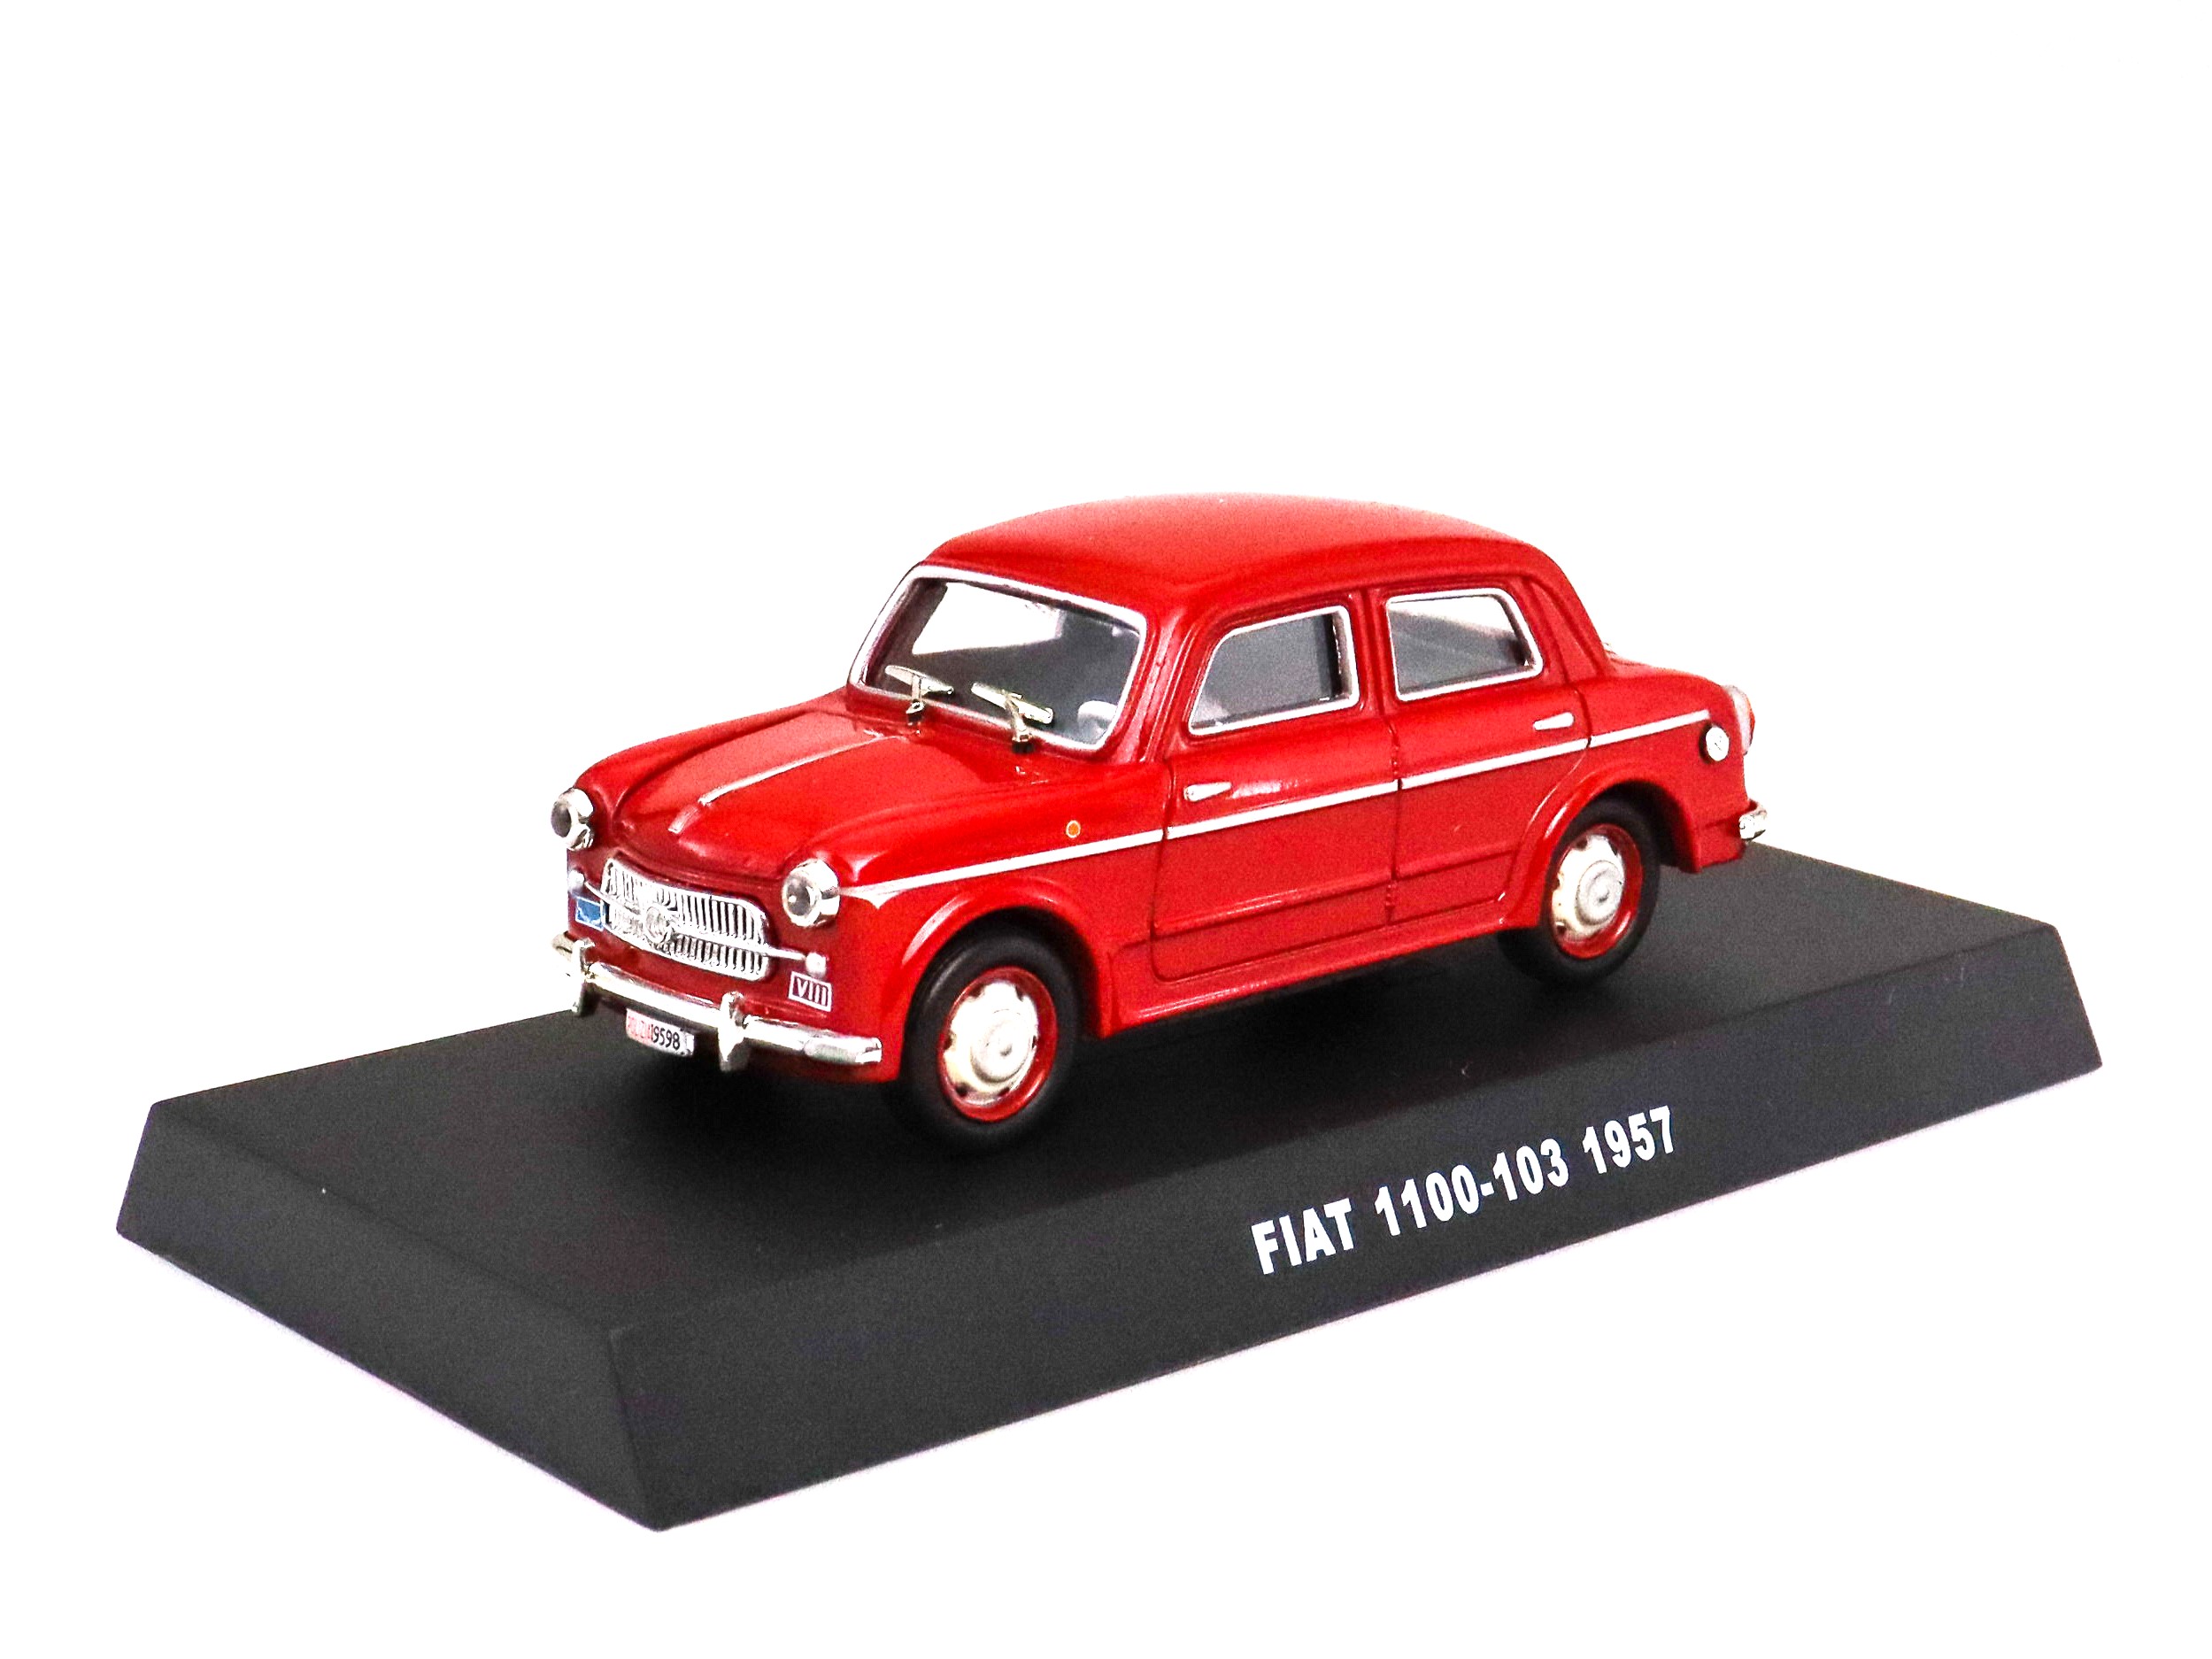 FIAT 1100-103 1957